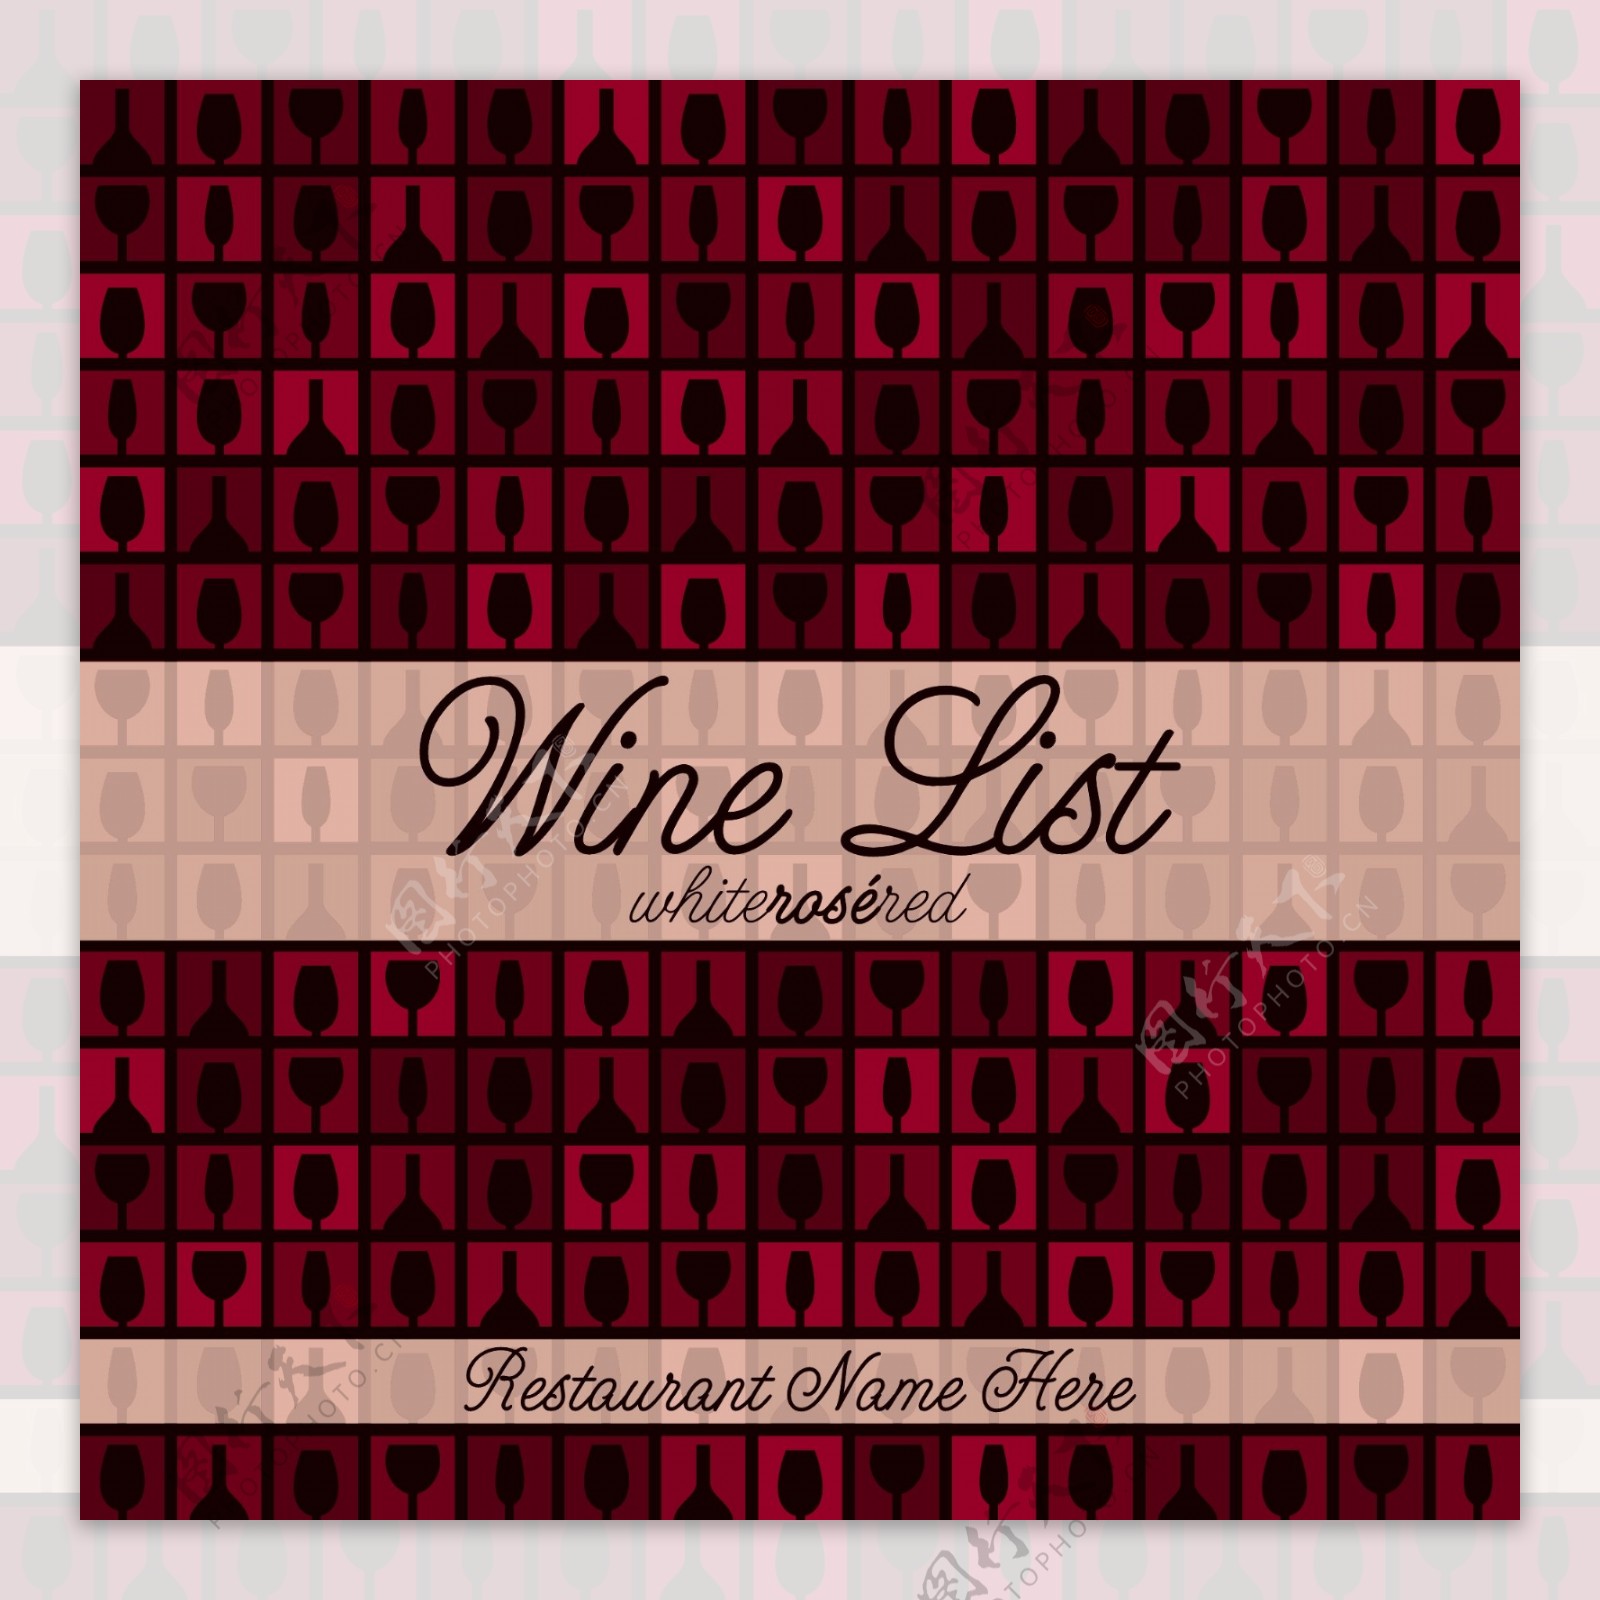 葡萄酒玻璃瓶在矢量格式的复古触及现代马赛克菜单